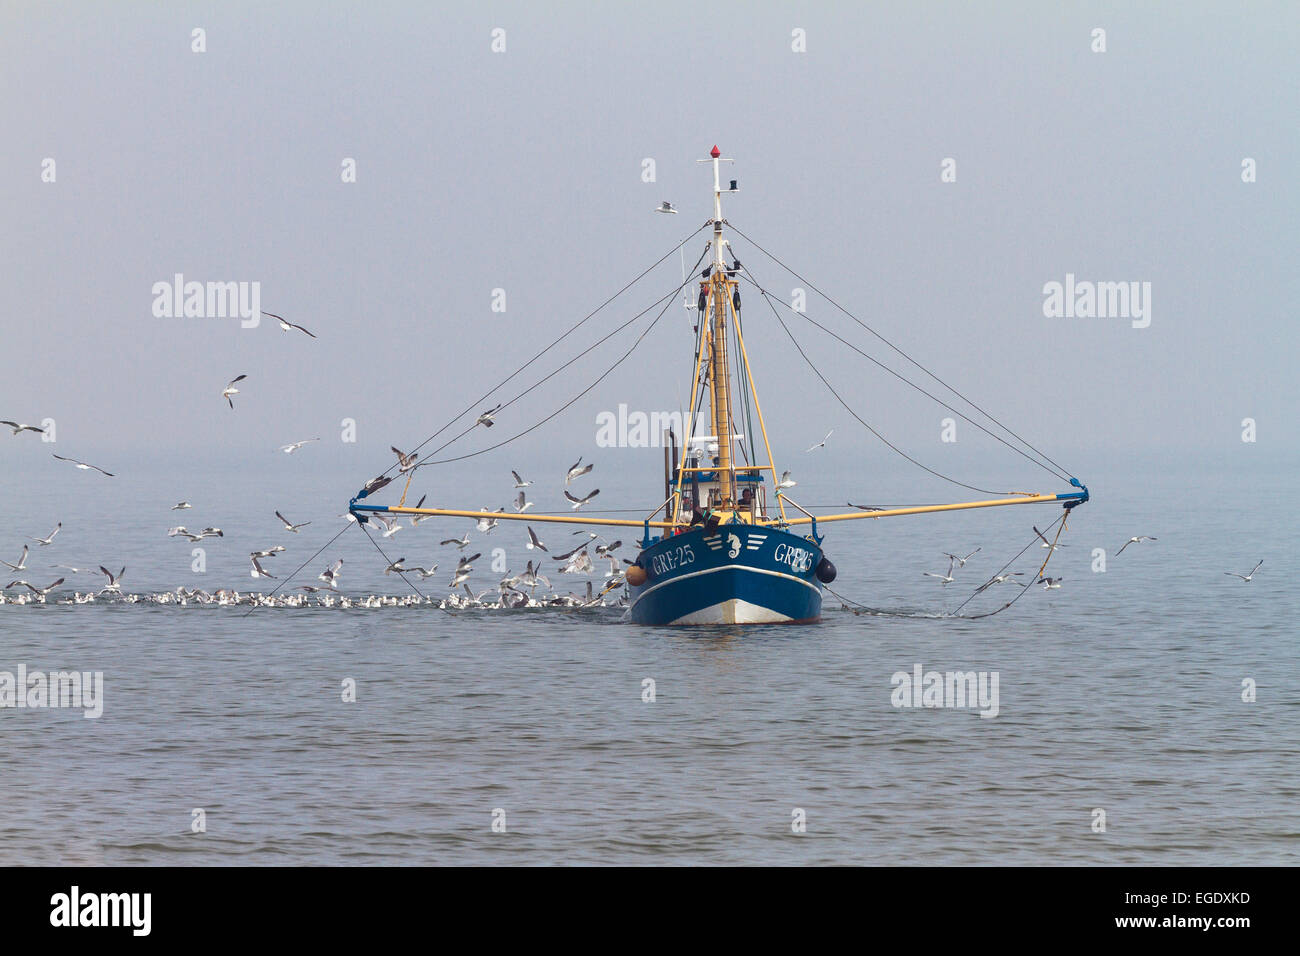 Fishingboat con gaviotas off Norderney Island, parque nacional, Mar del Norte, Islas de Frisia Oriental, Frisia Oriental, Baja Sajonia, Alemania, Europa Foto de stock